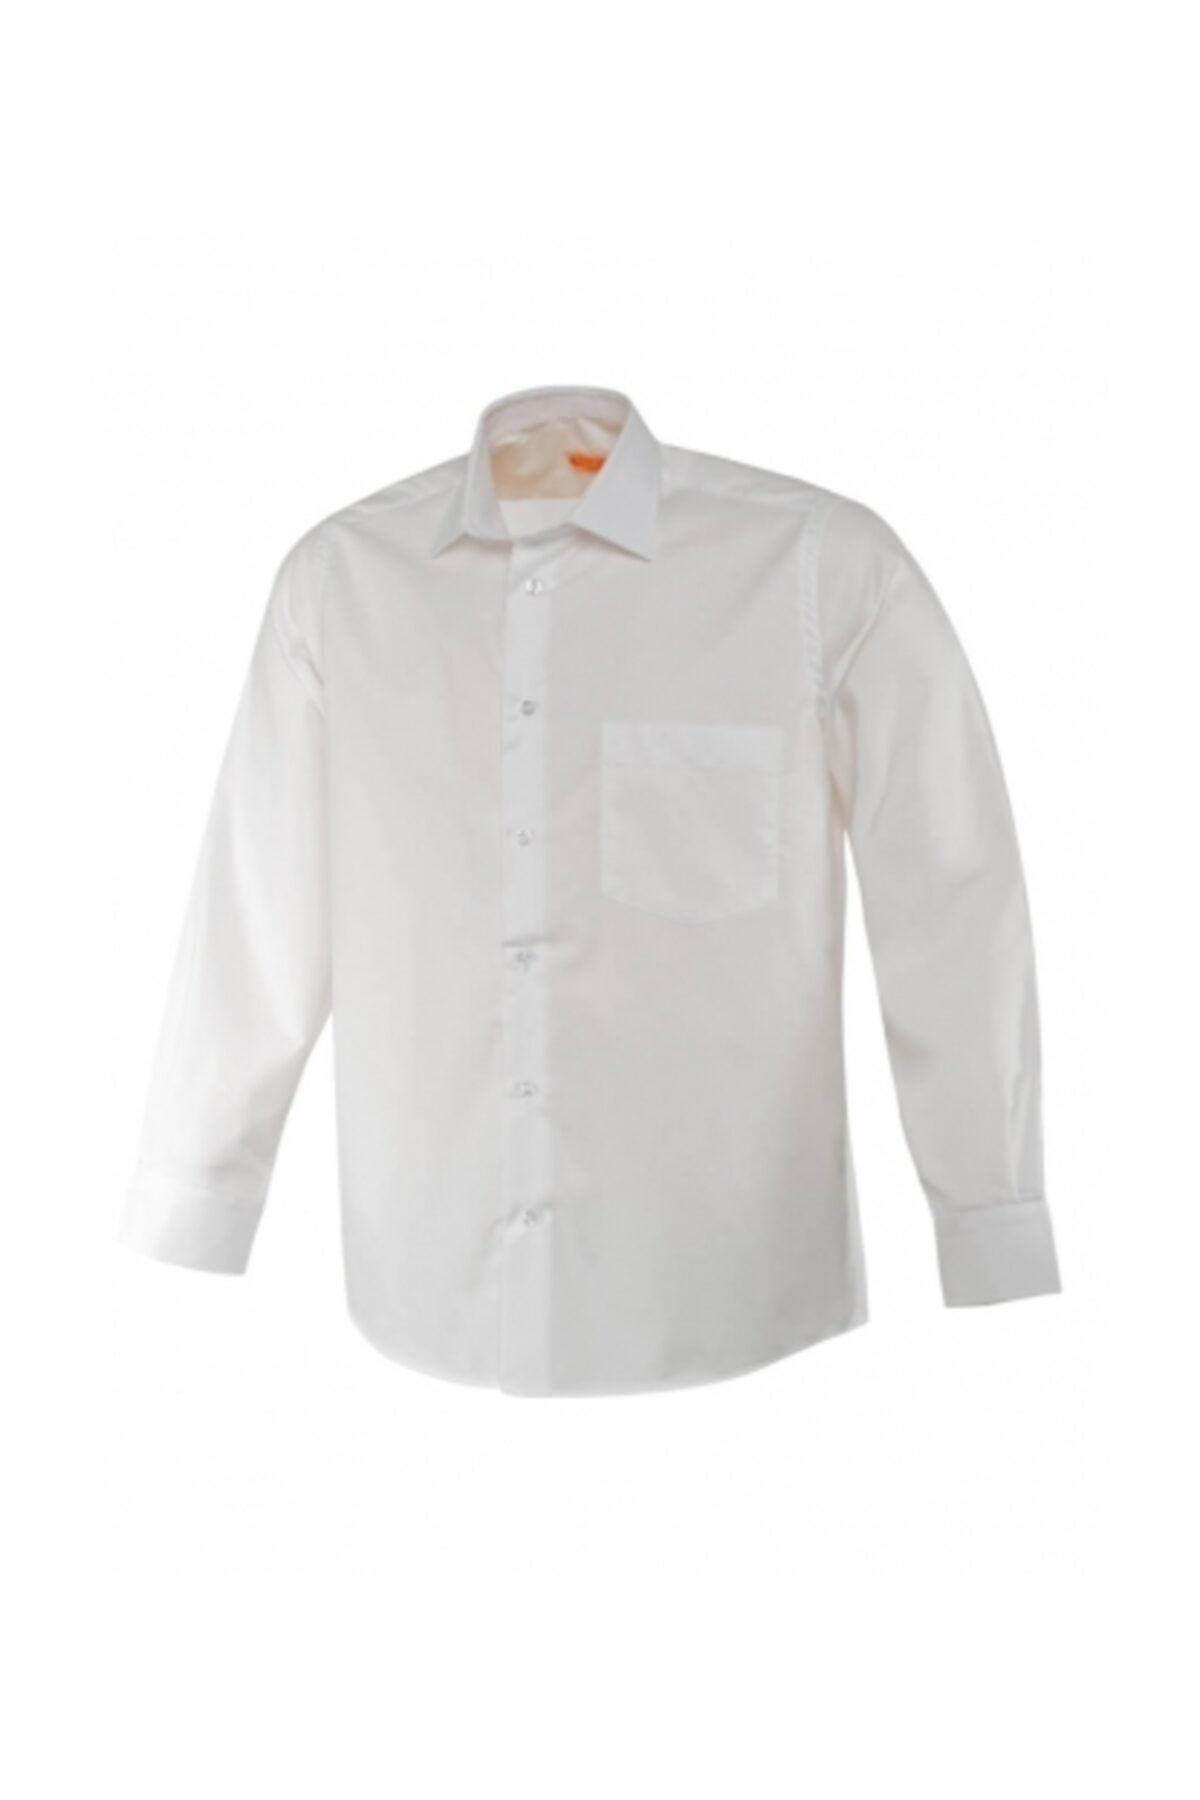 İŞMONT Erkek Beyaz Oxford Klasik Uzun Kollu Gömlek